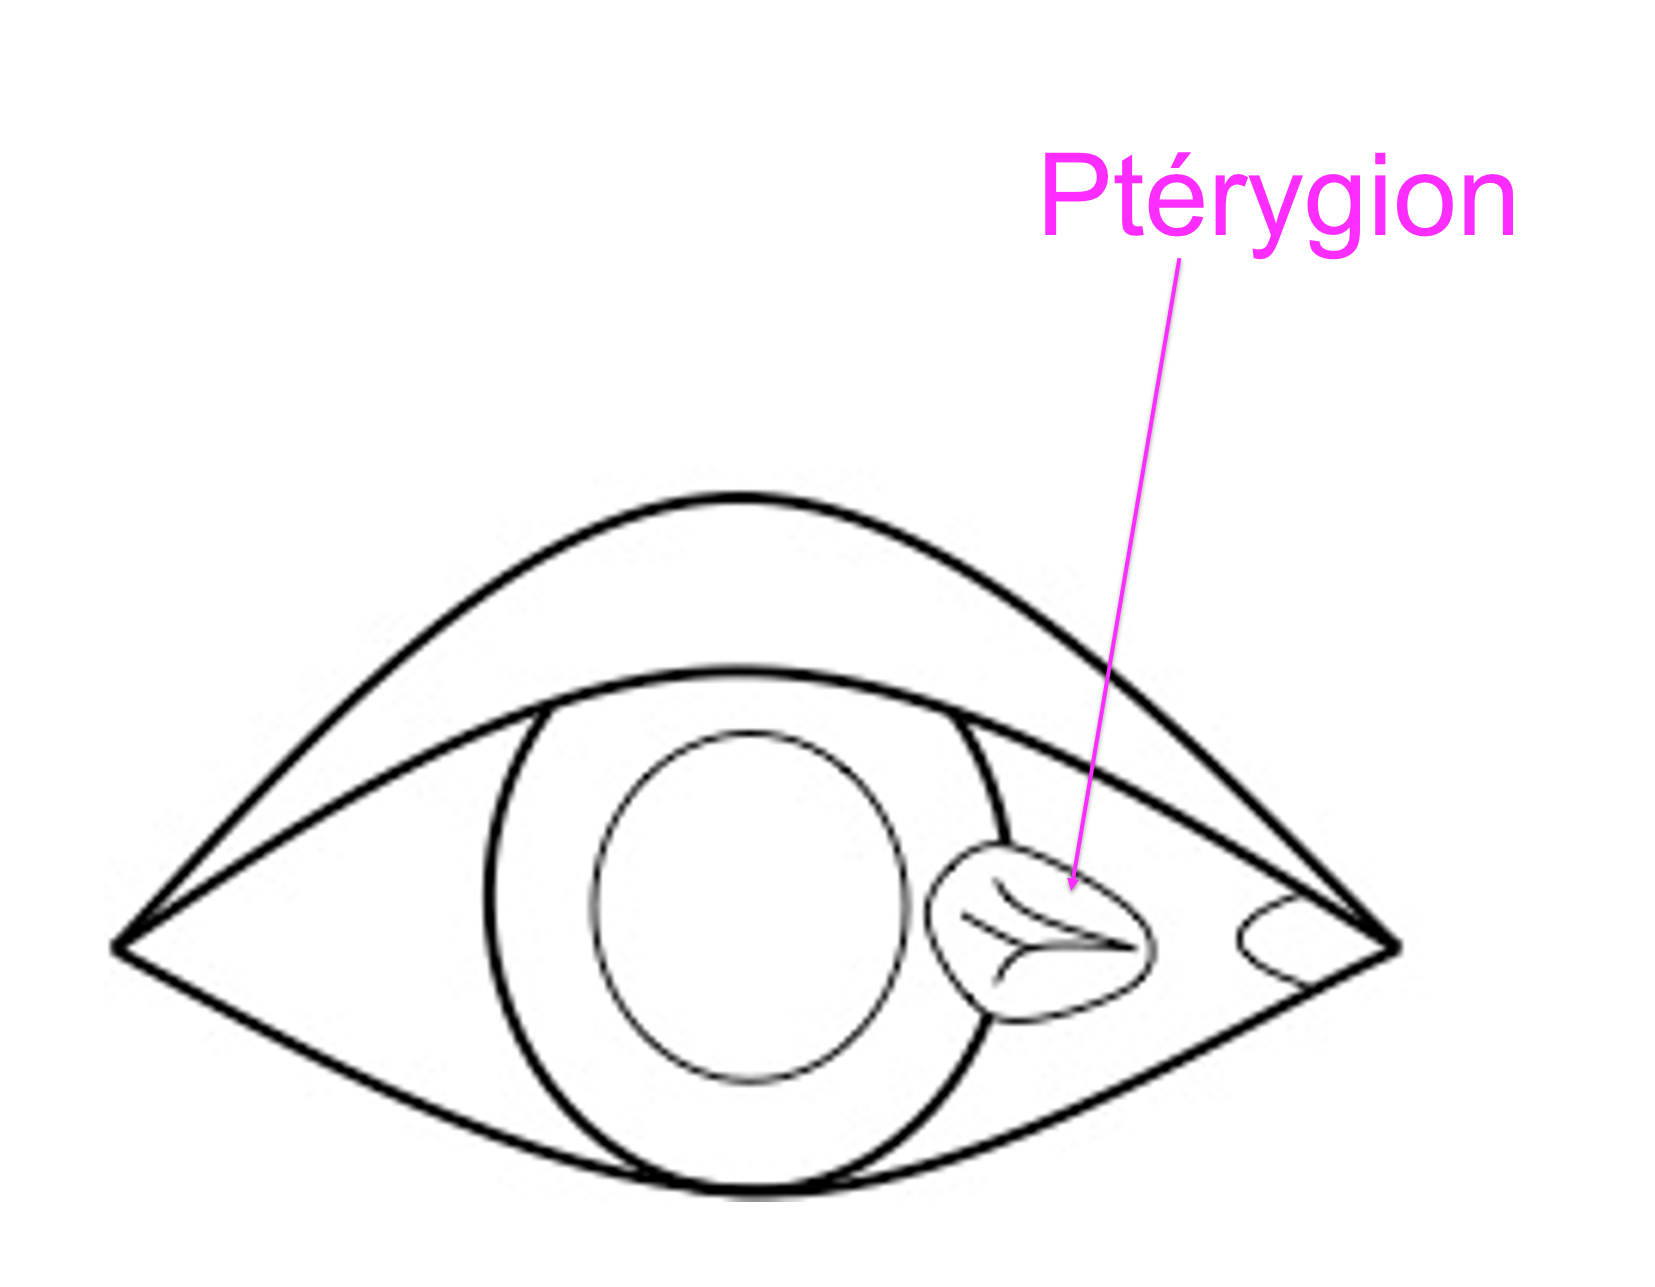 représentation schématique d'un ptérygion à la surface de l'oeil